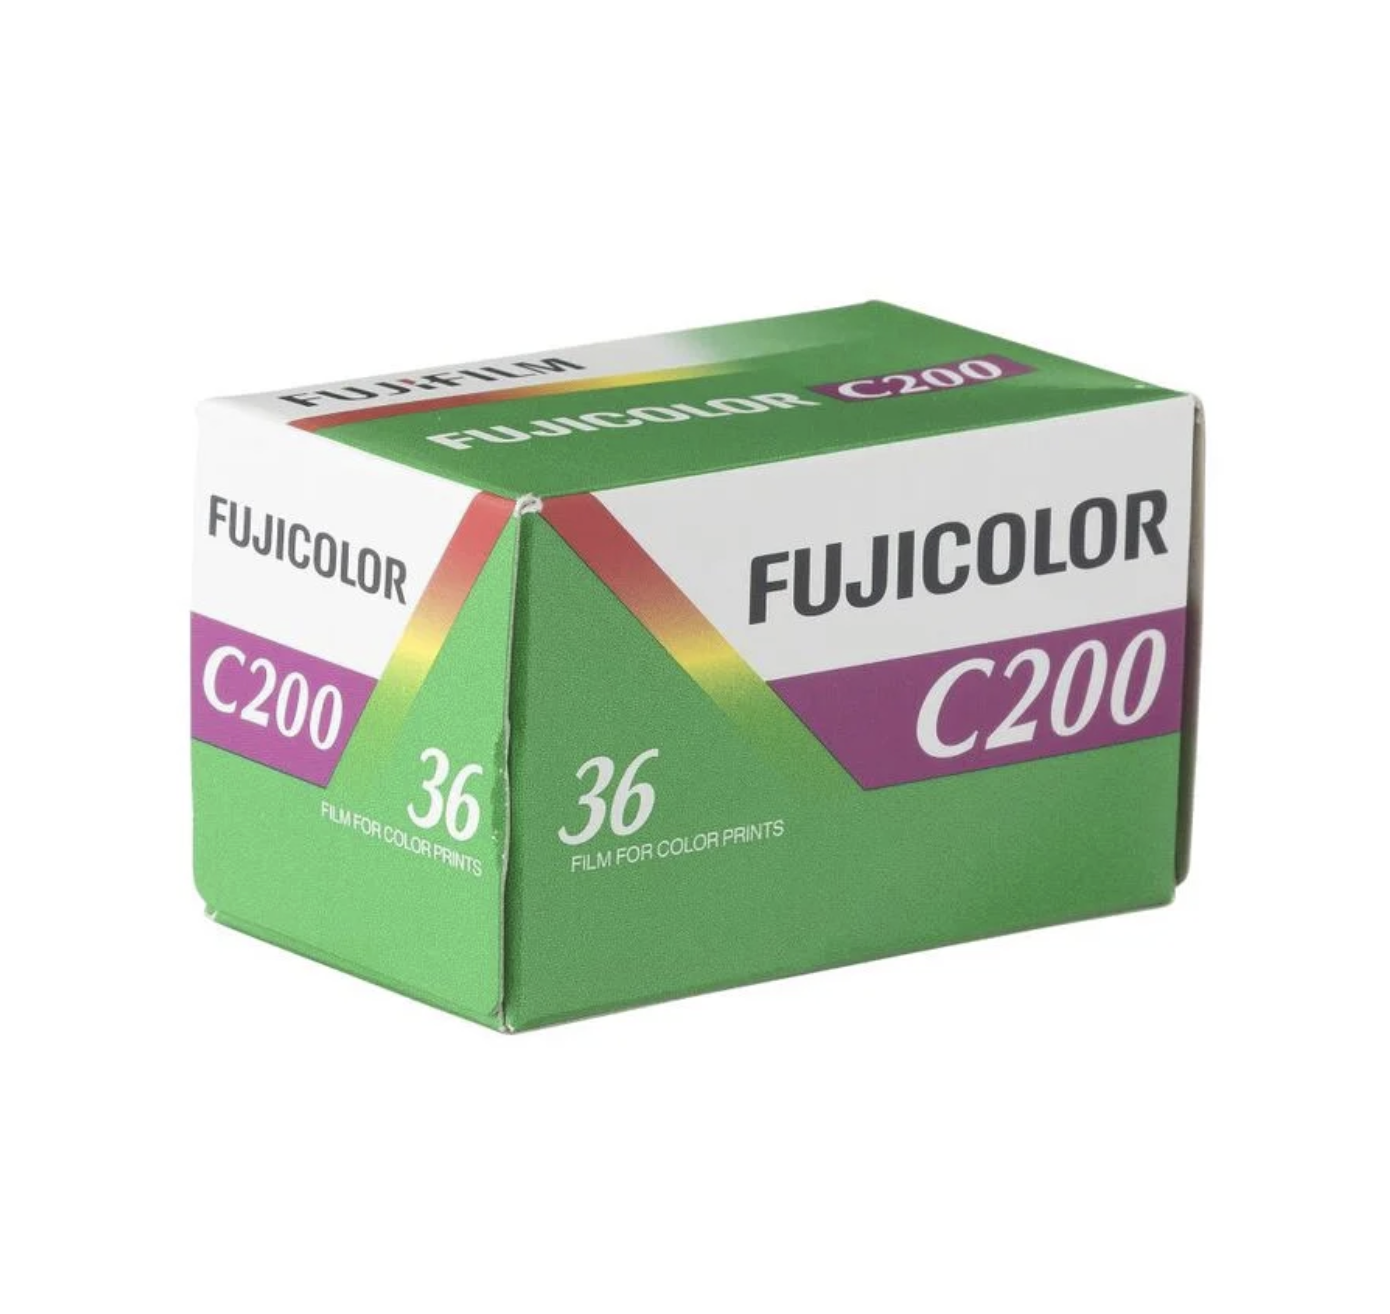 Fujicolor C200 135-36